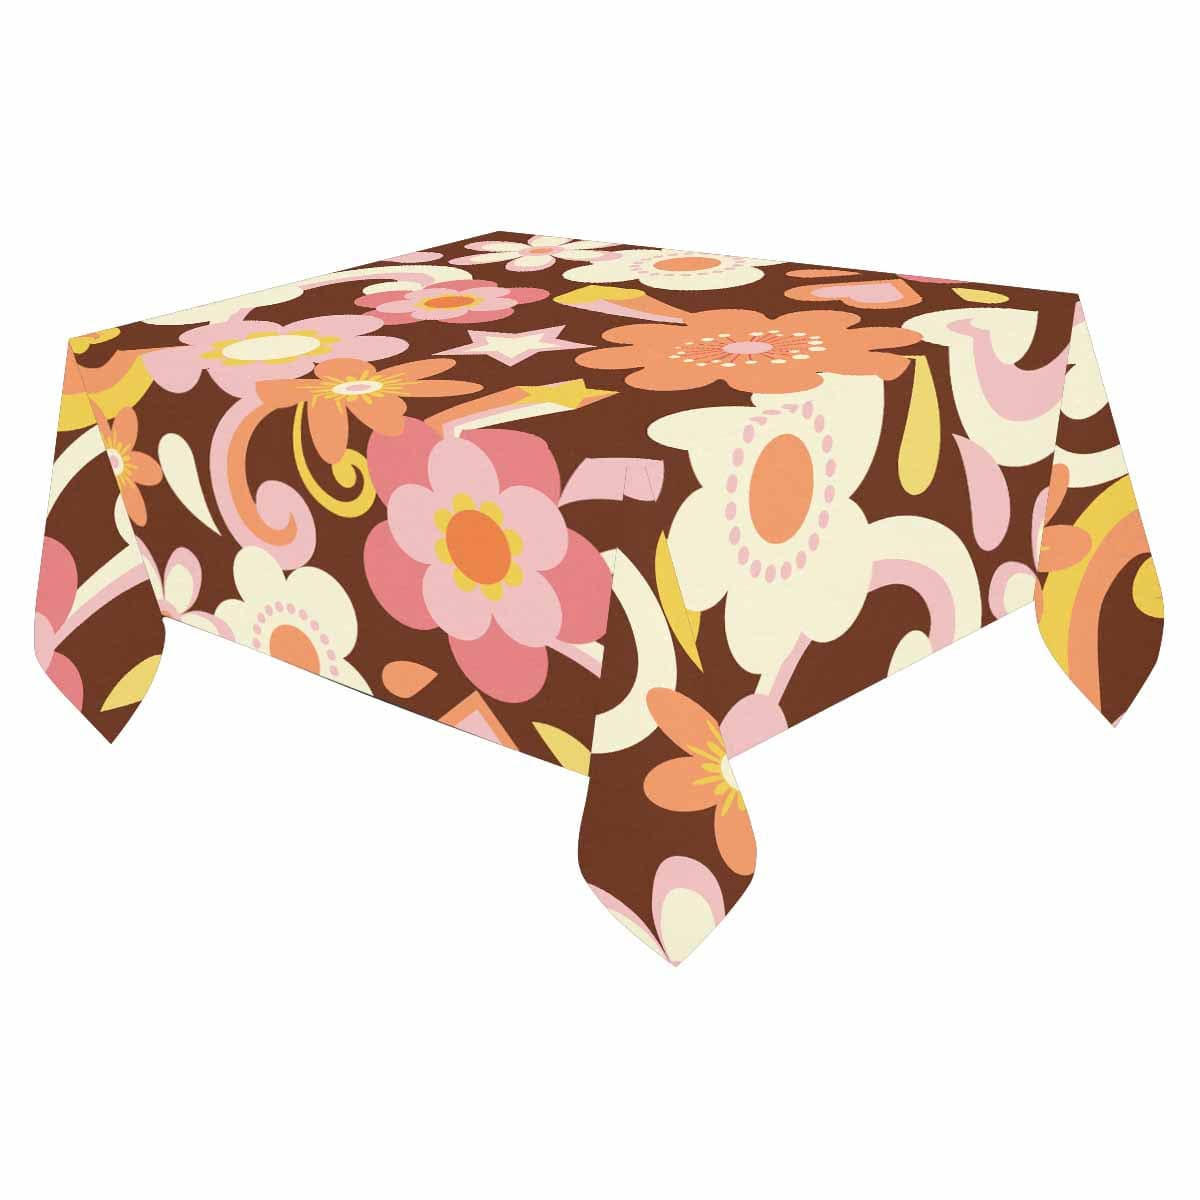 Kate McEnroe New York Retro Vintage Floral Cotton Linen Tablecloth Table Linens 52" x 70" / DG1028569DXH2487D DG1028569DXH2487D